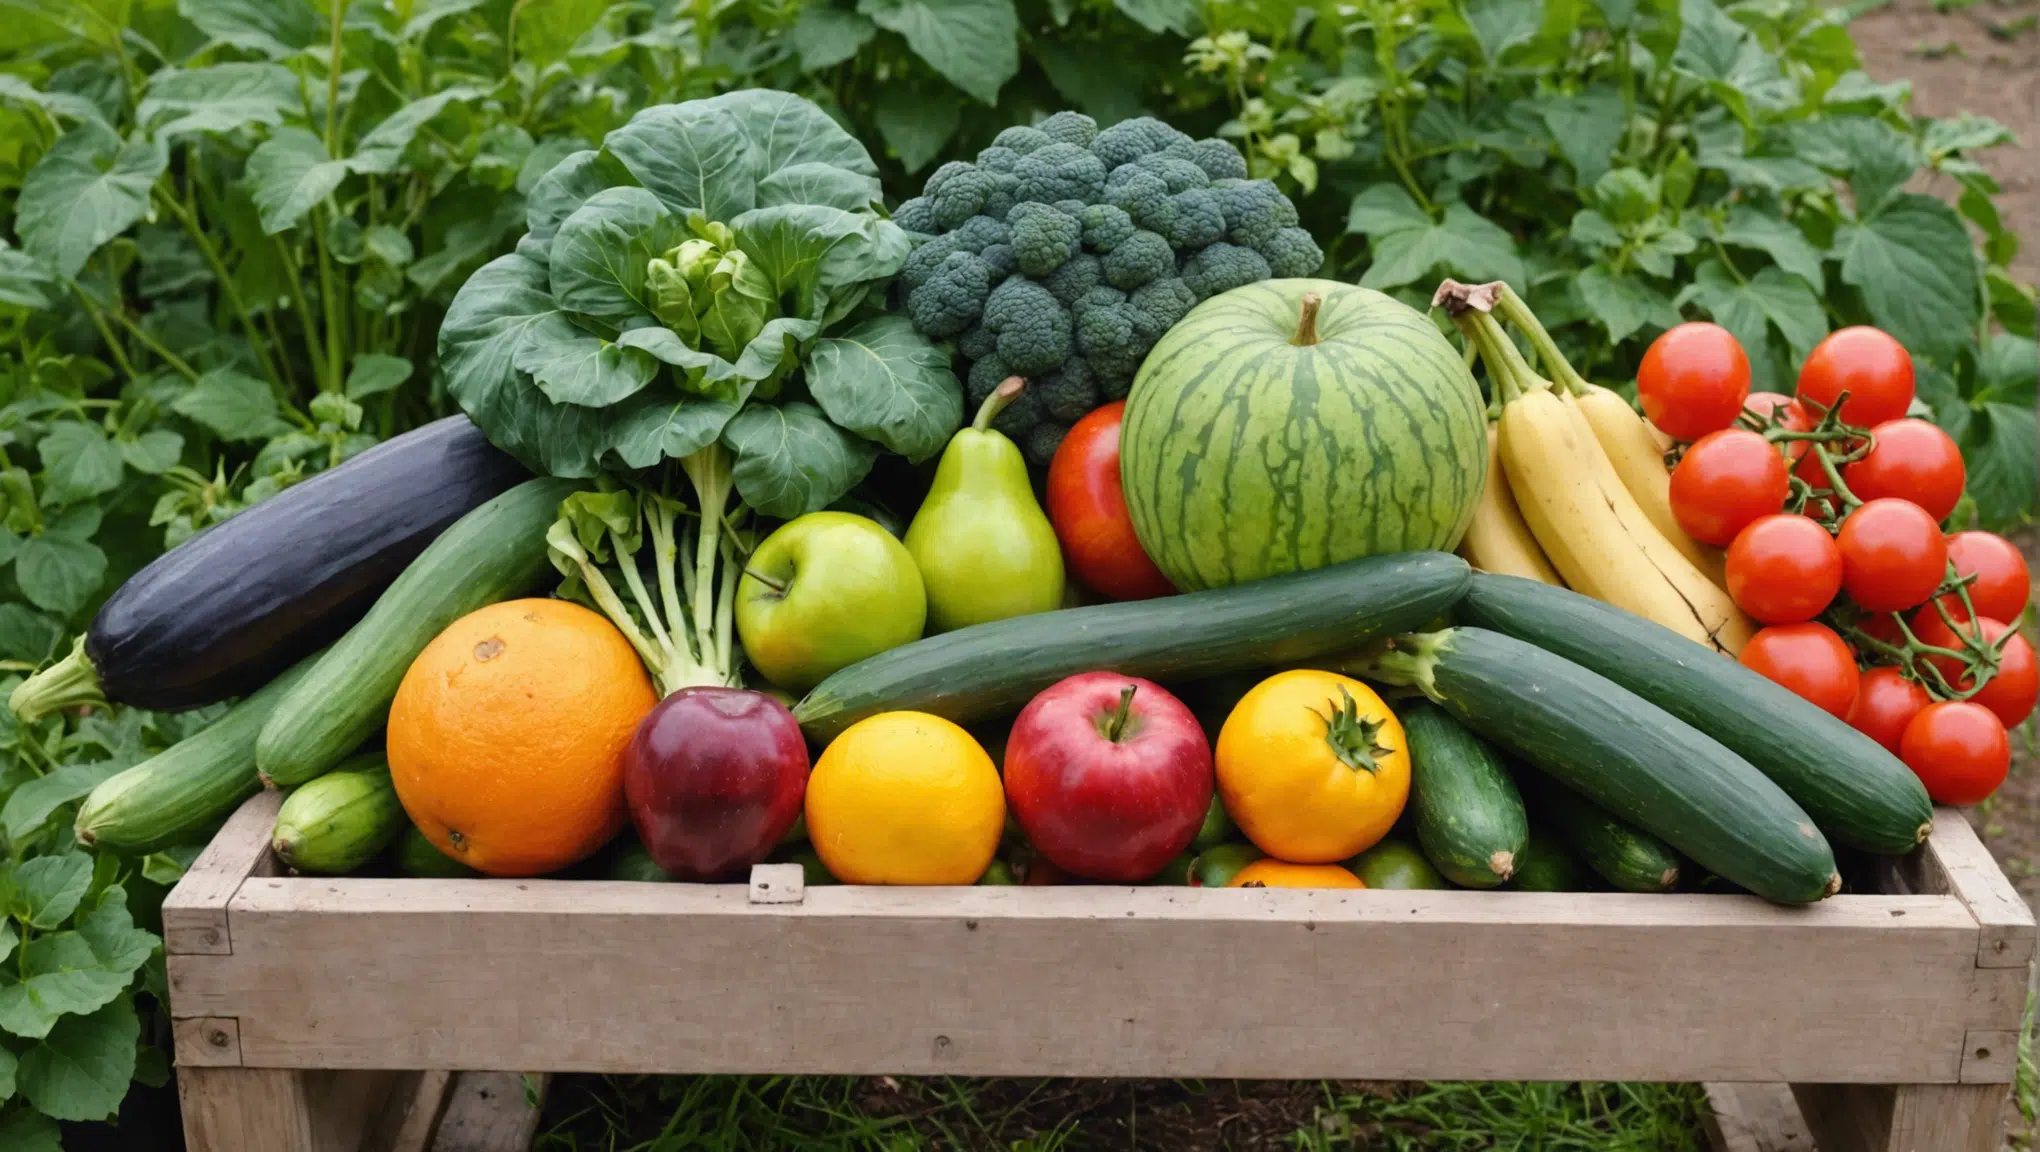 découvrez comment cultiver 10 variétés de fruits et légumes dans un potager bio. conseils, astuces et techniques pour réussir votre potager écologique.